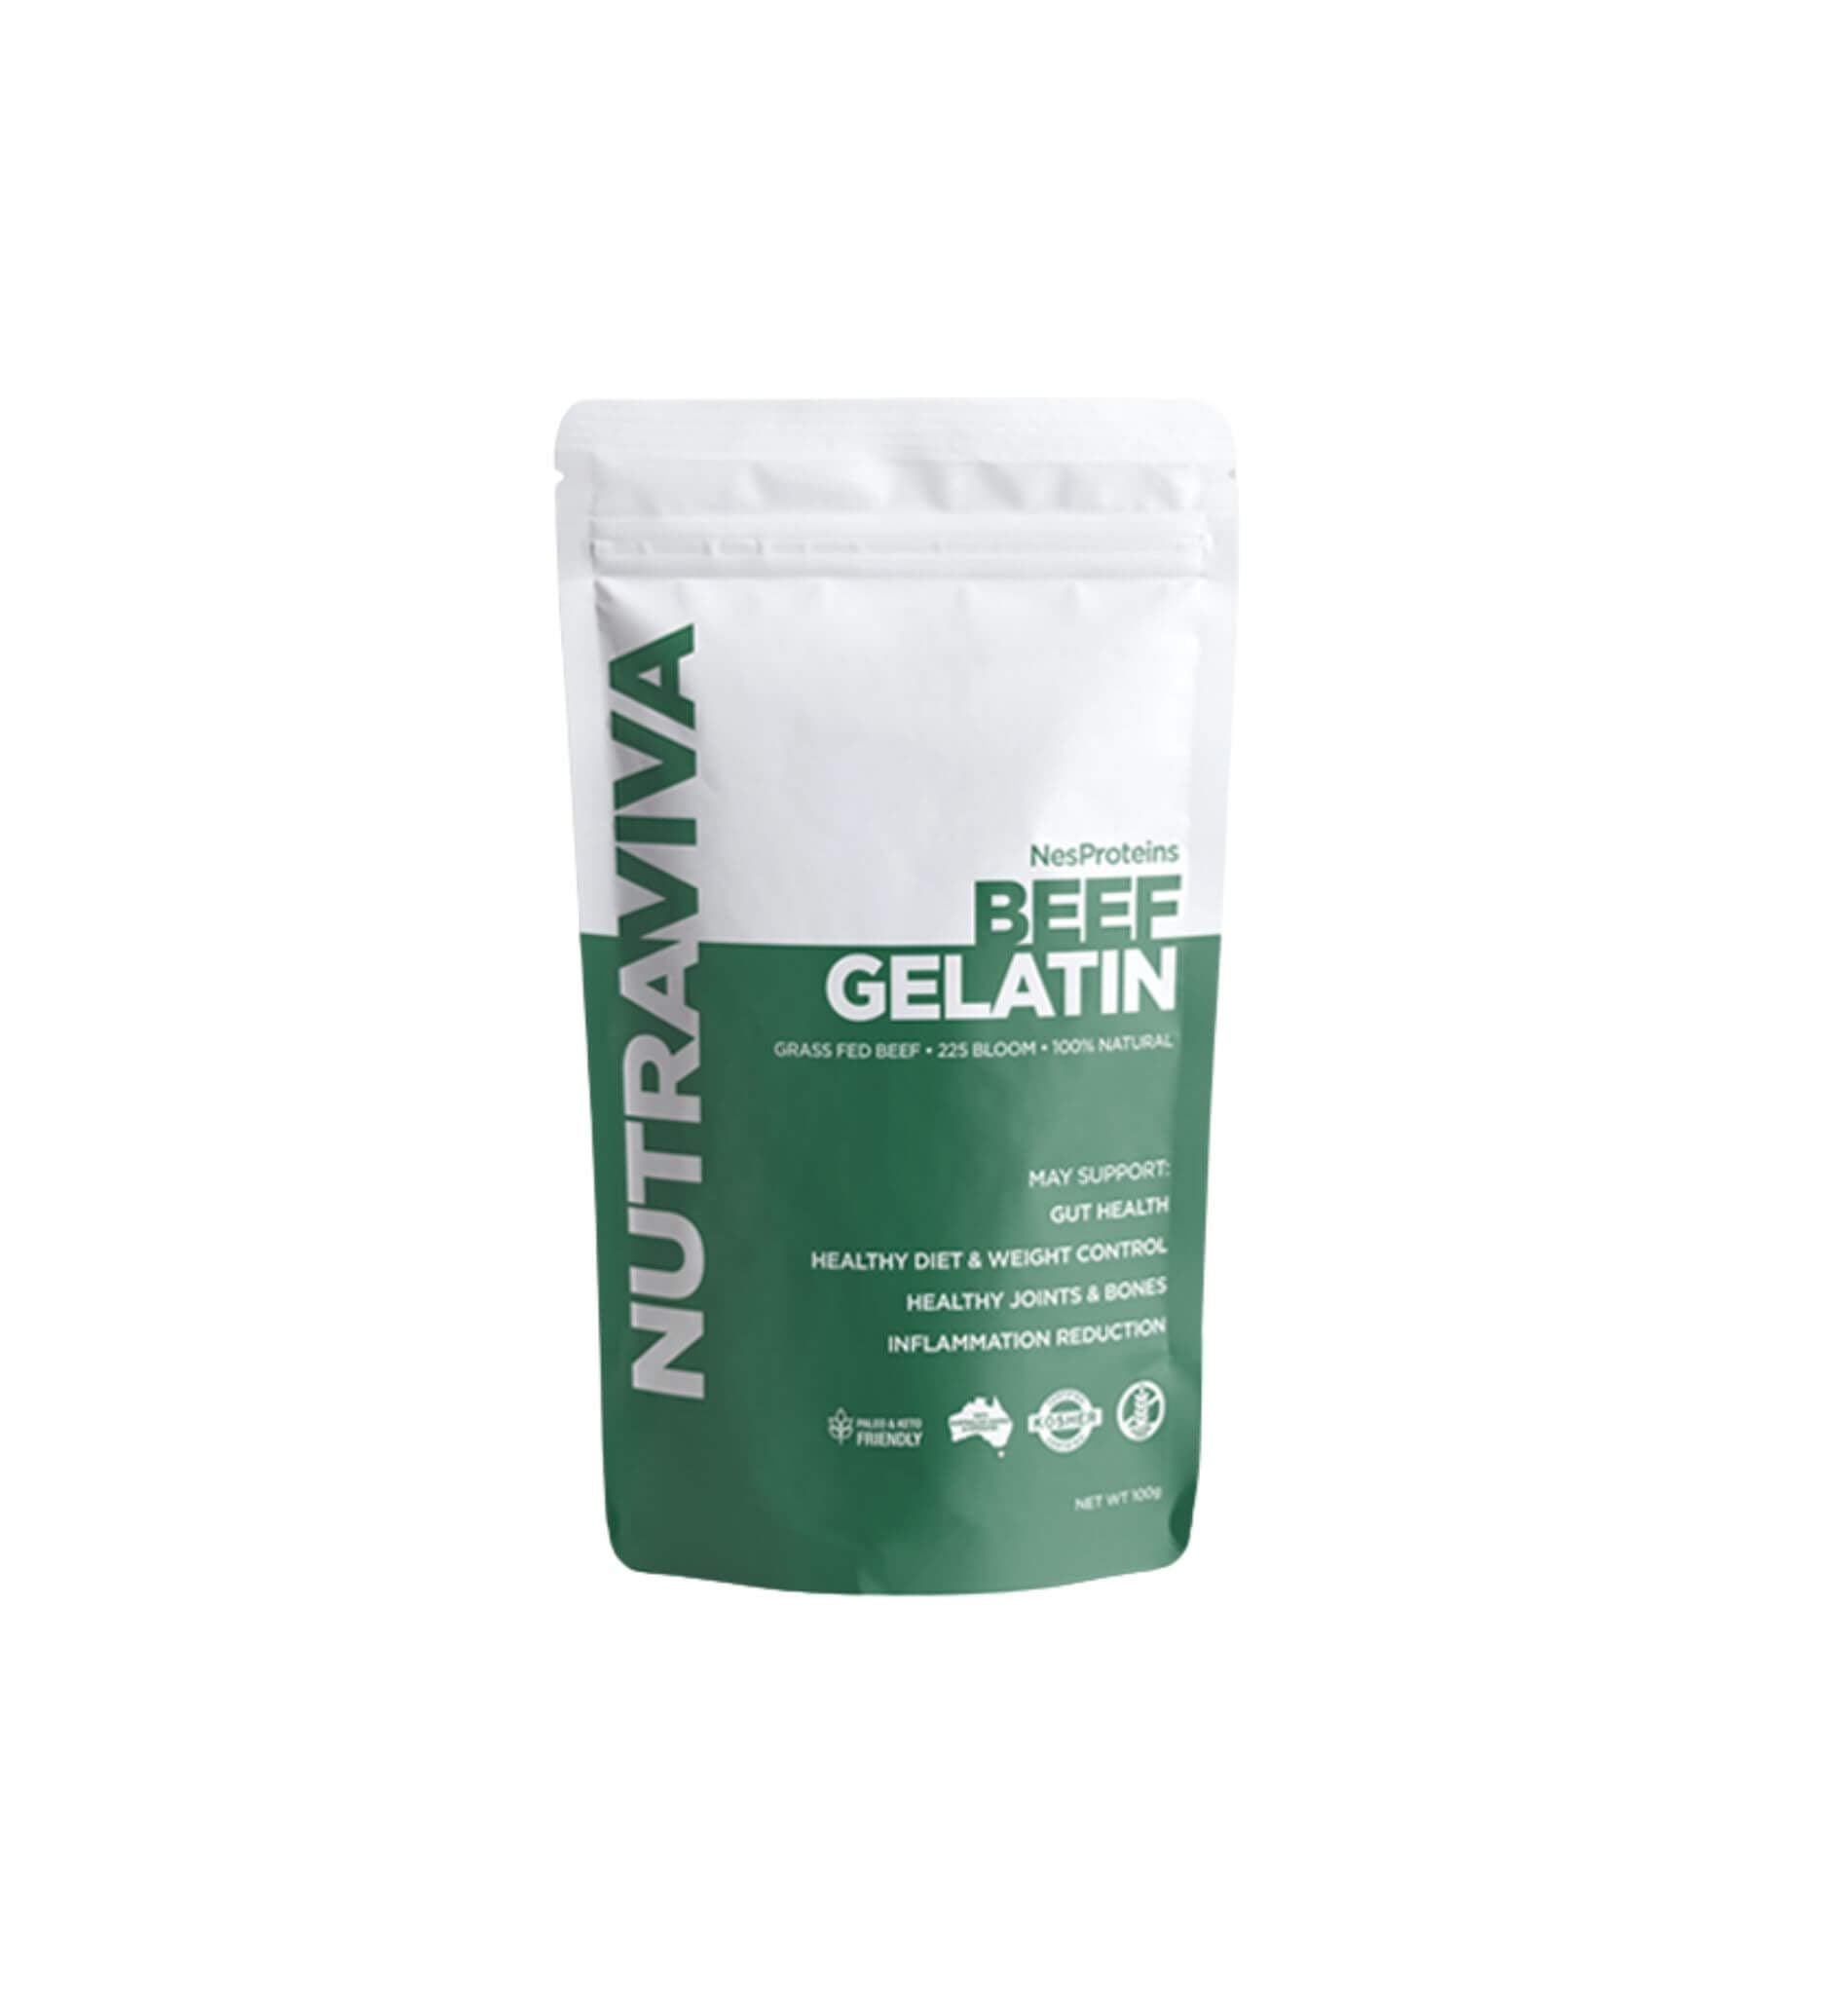 Start Well: Collagen 100g + Gelatin 100g + Bone Broth 100g